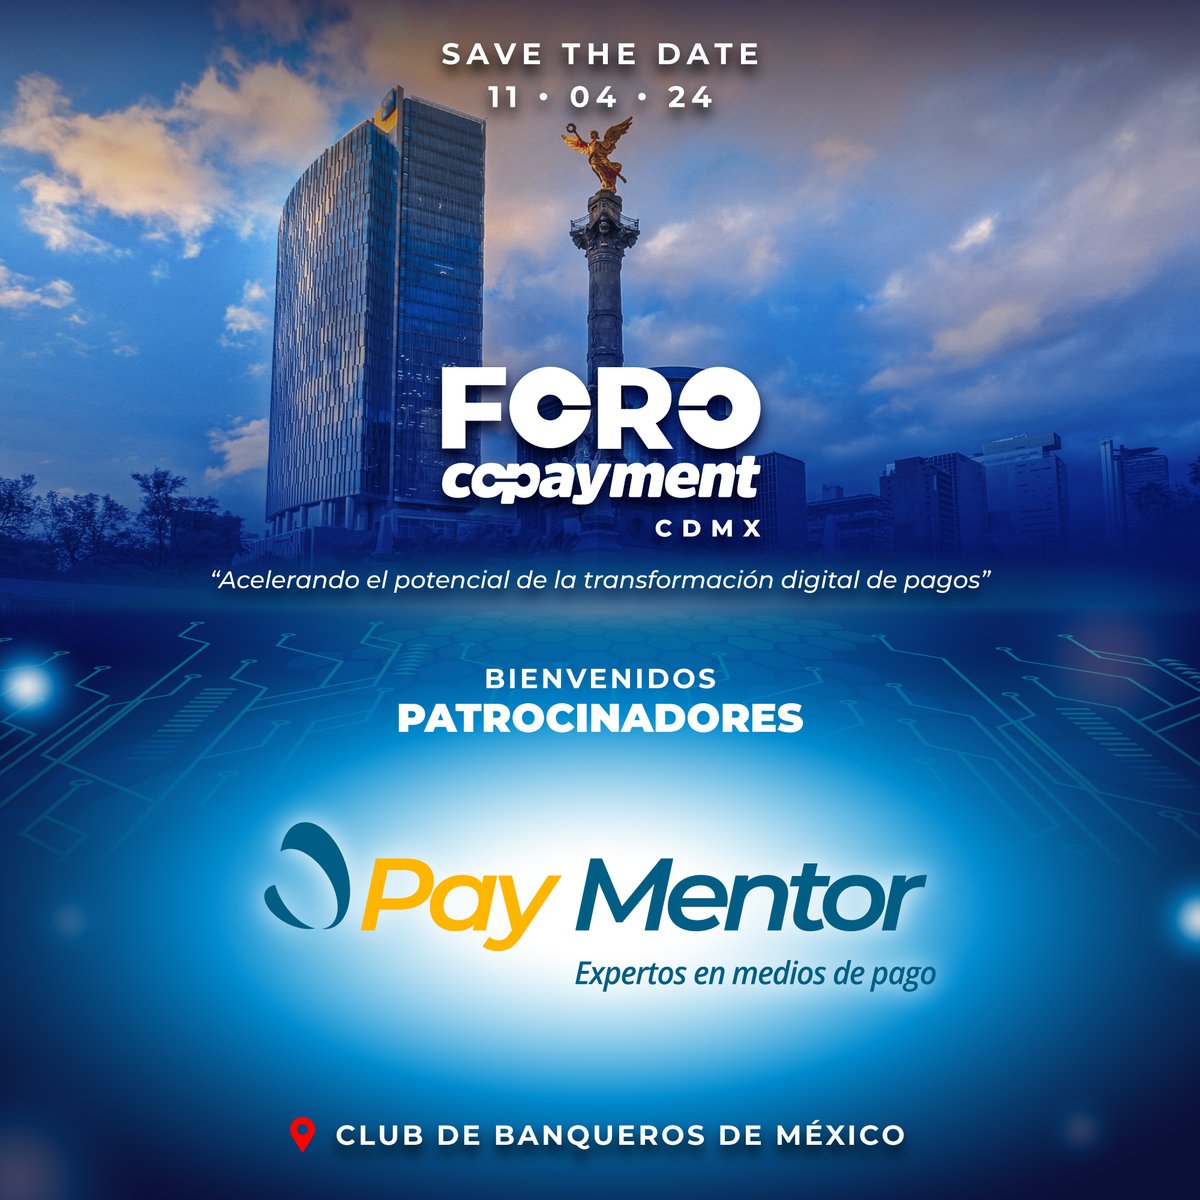 ¡Le damos la bienvenida a Paymentor como patrocinador del FORO COPAYMENT CDMX! 📆 11 de Abril, 2024 📍 Club de Banqueros de México ➡️ Regístrate: foro.copayment.com.mx/#/signup #forocopaymentcdmx